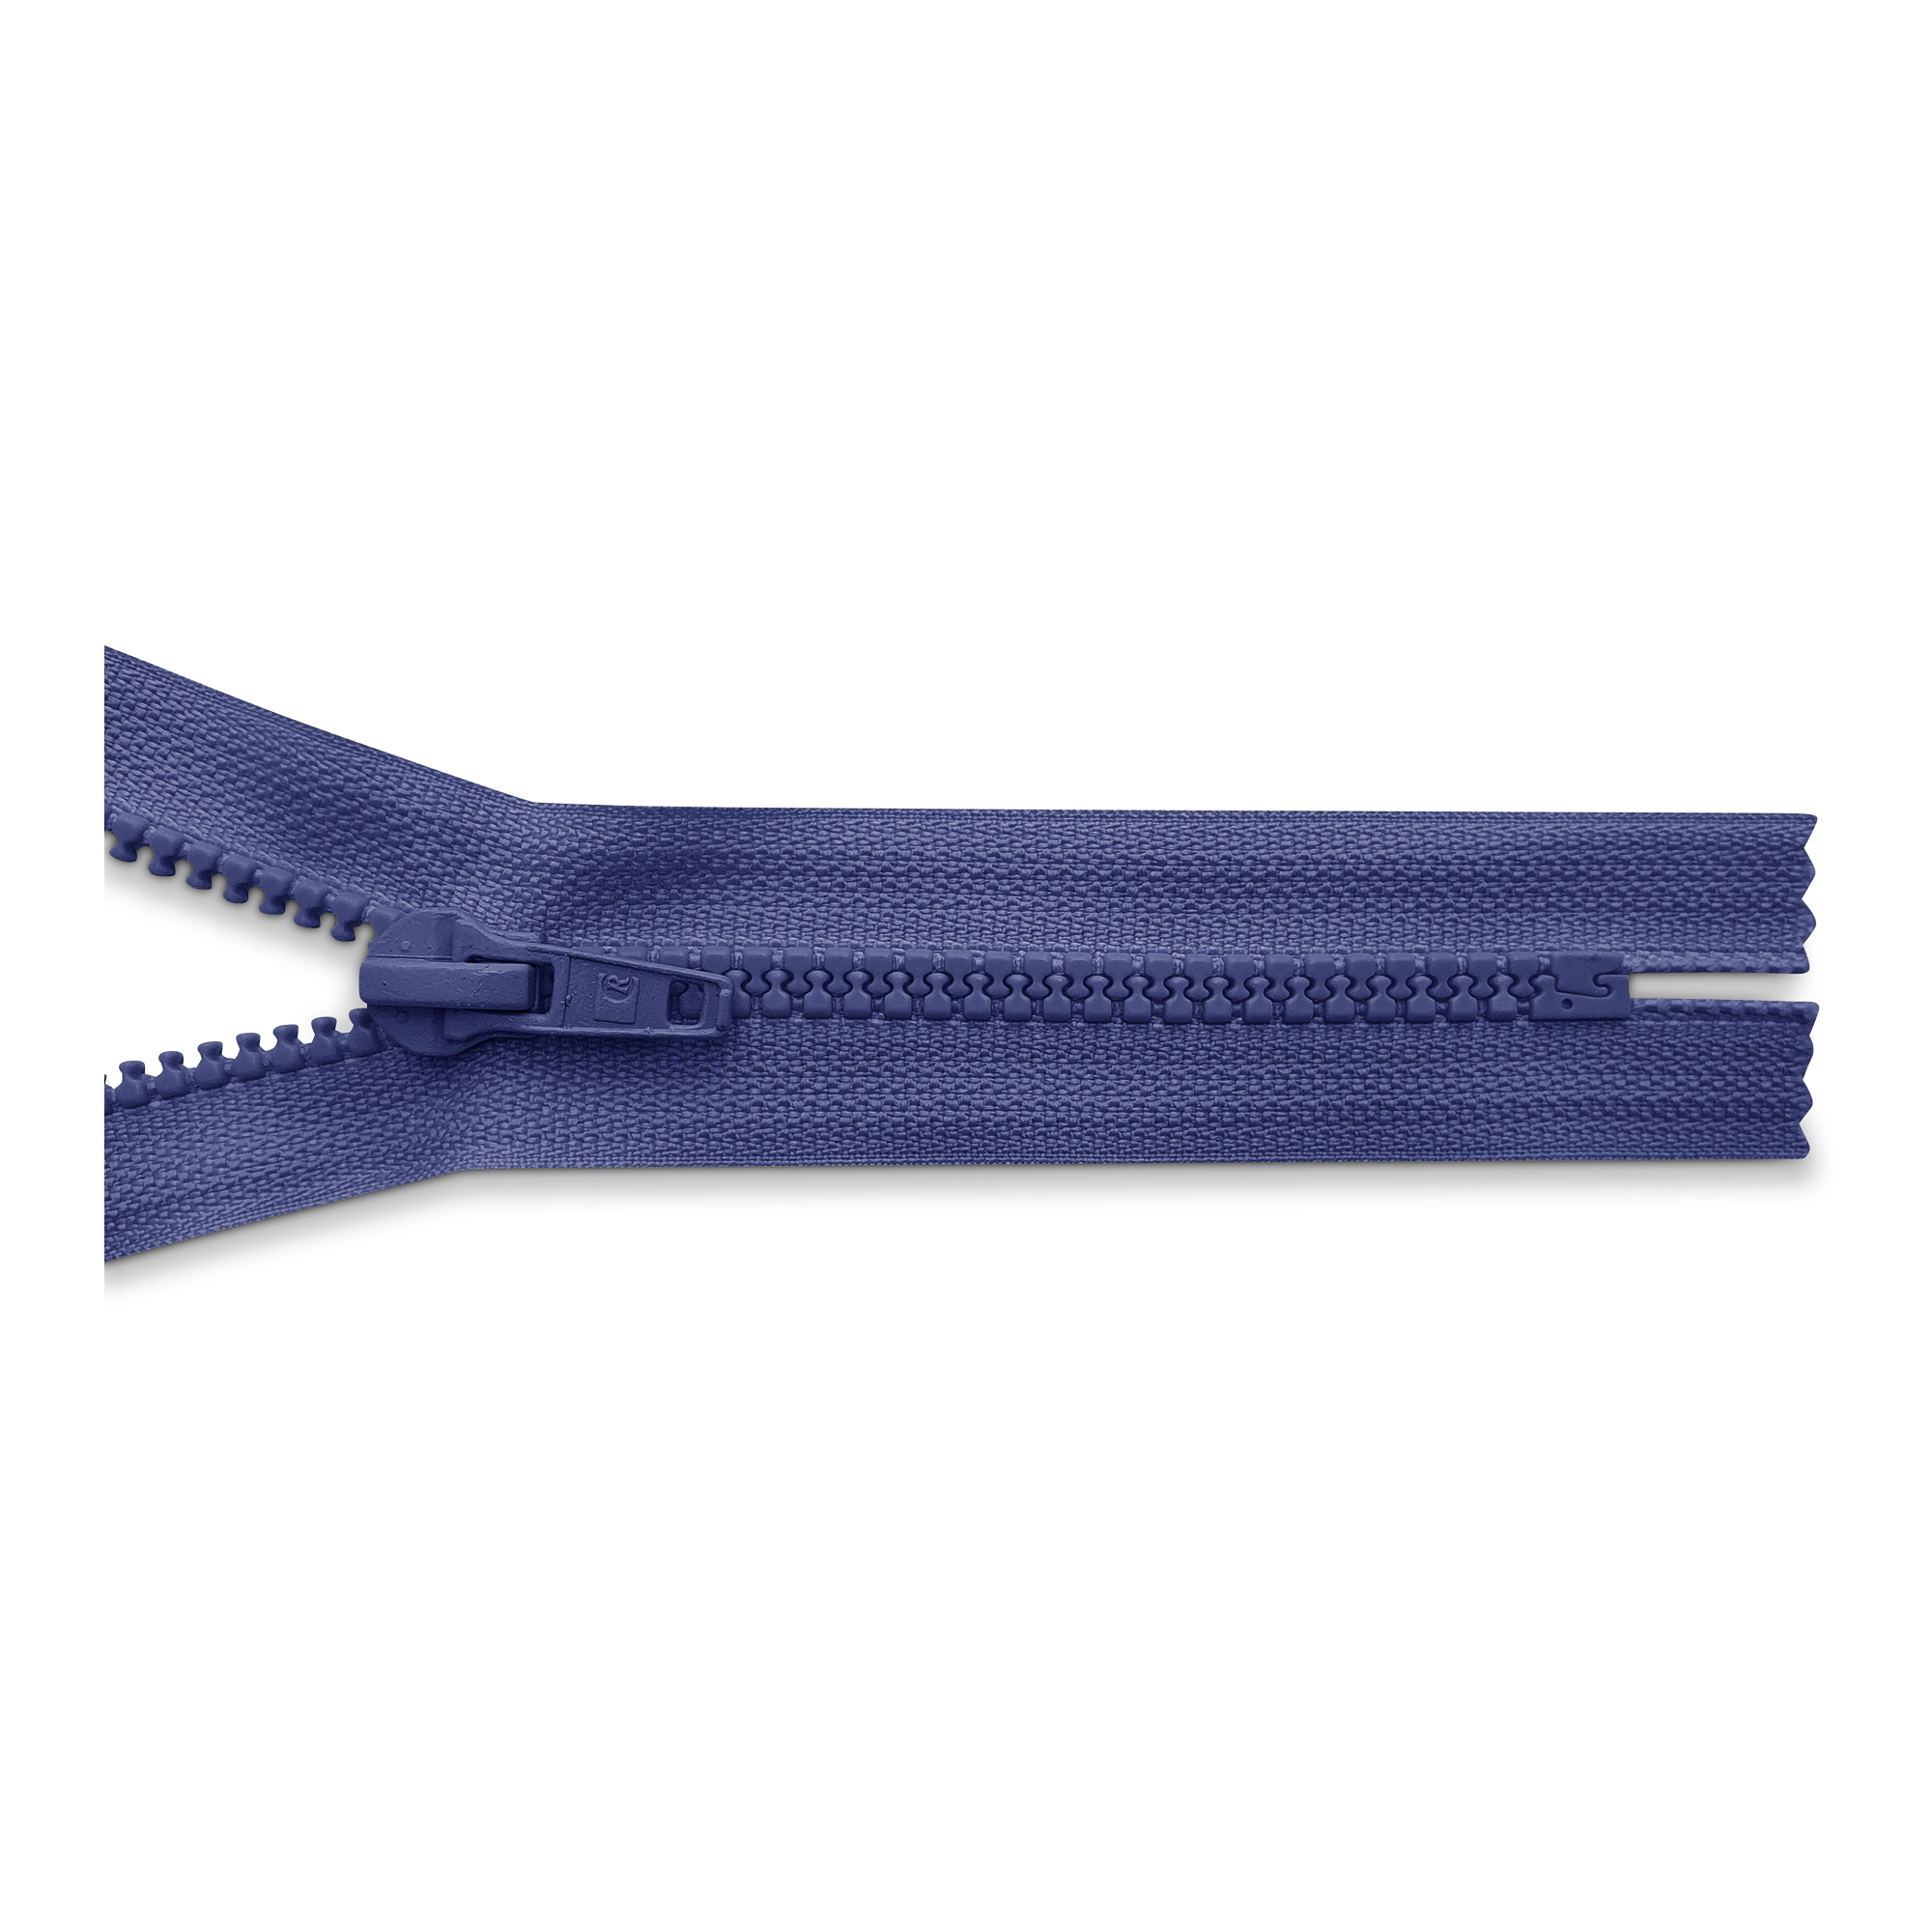 Reißverschluss 20cm, nicht teilbar, K.stoff Zähne breit, saphir, hochwertiger Marken-Reißverschluss von Rubi/Barcelona